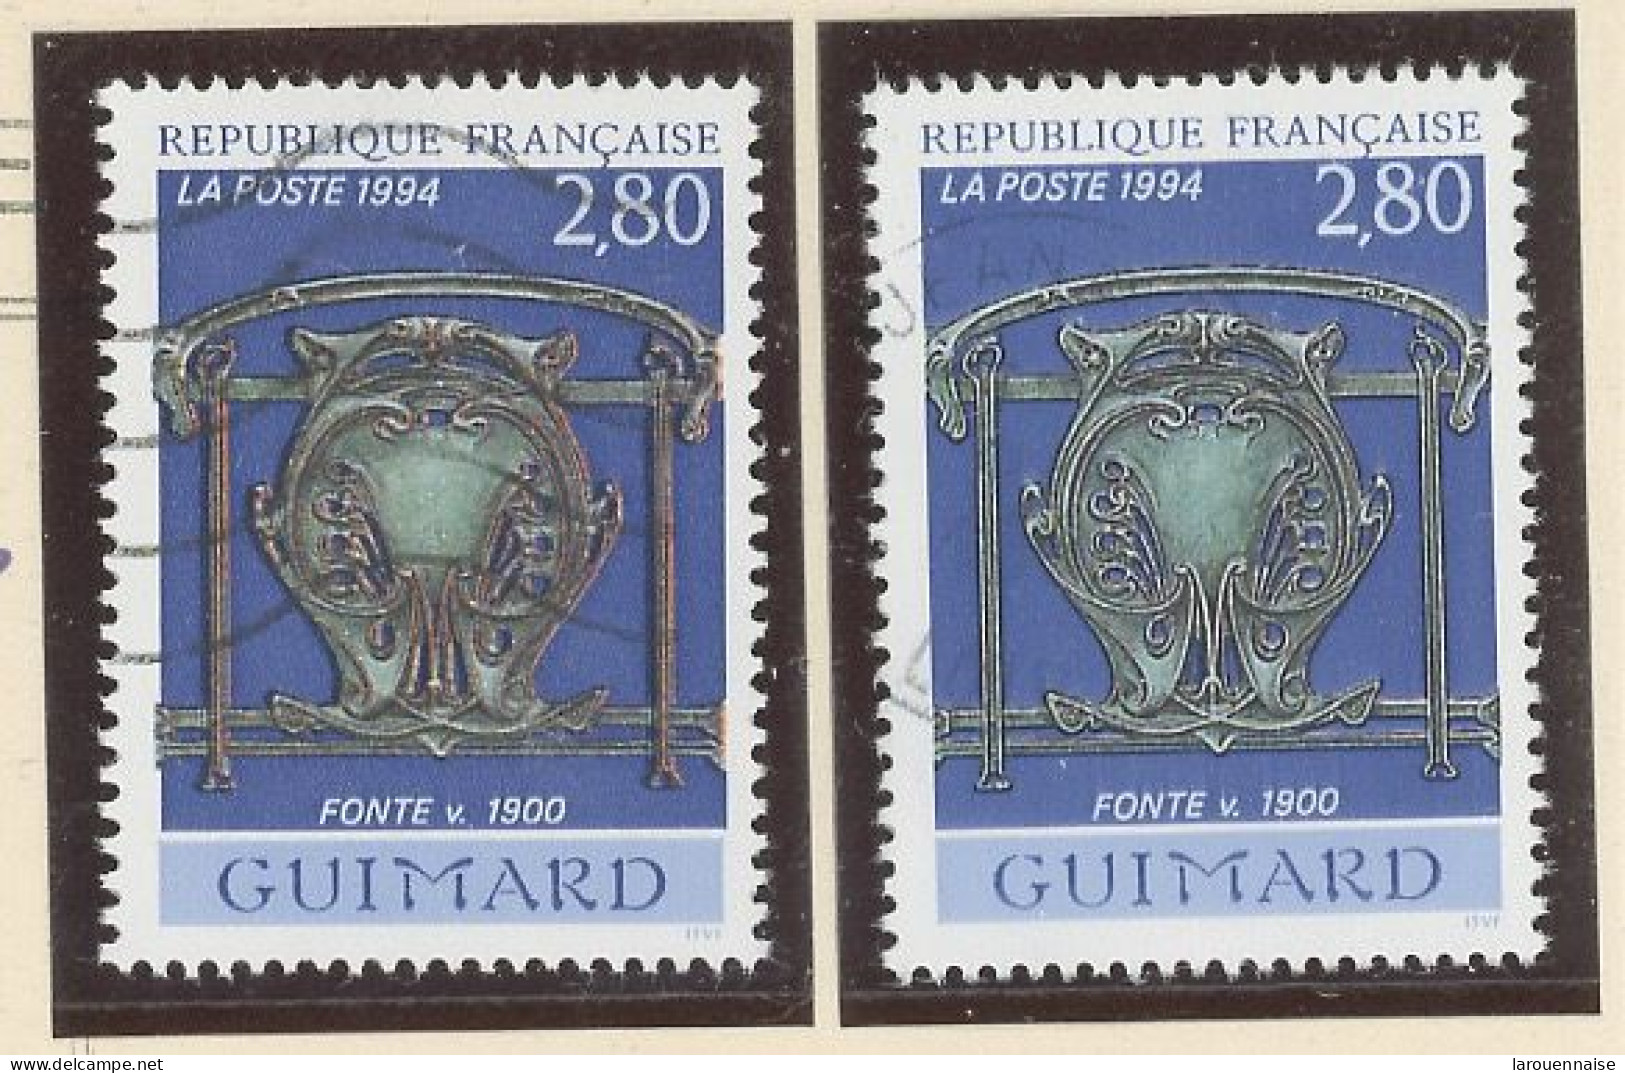 VARIÉTÉ - N° 2855 Obl - COULEUR ROUGE DANS LA FONTE - Used Stamps